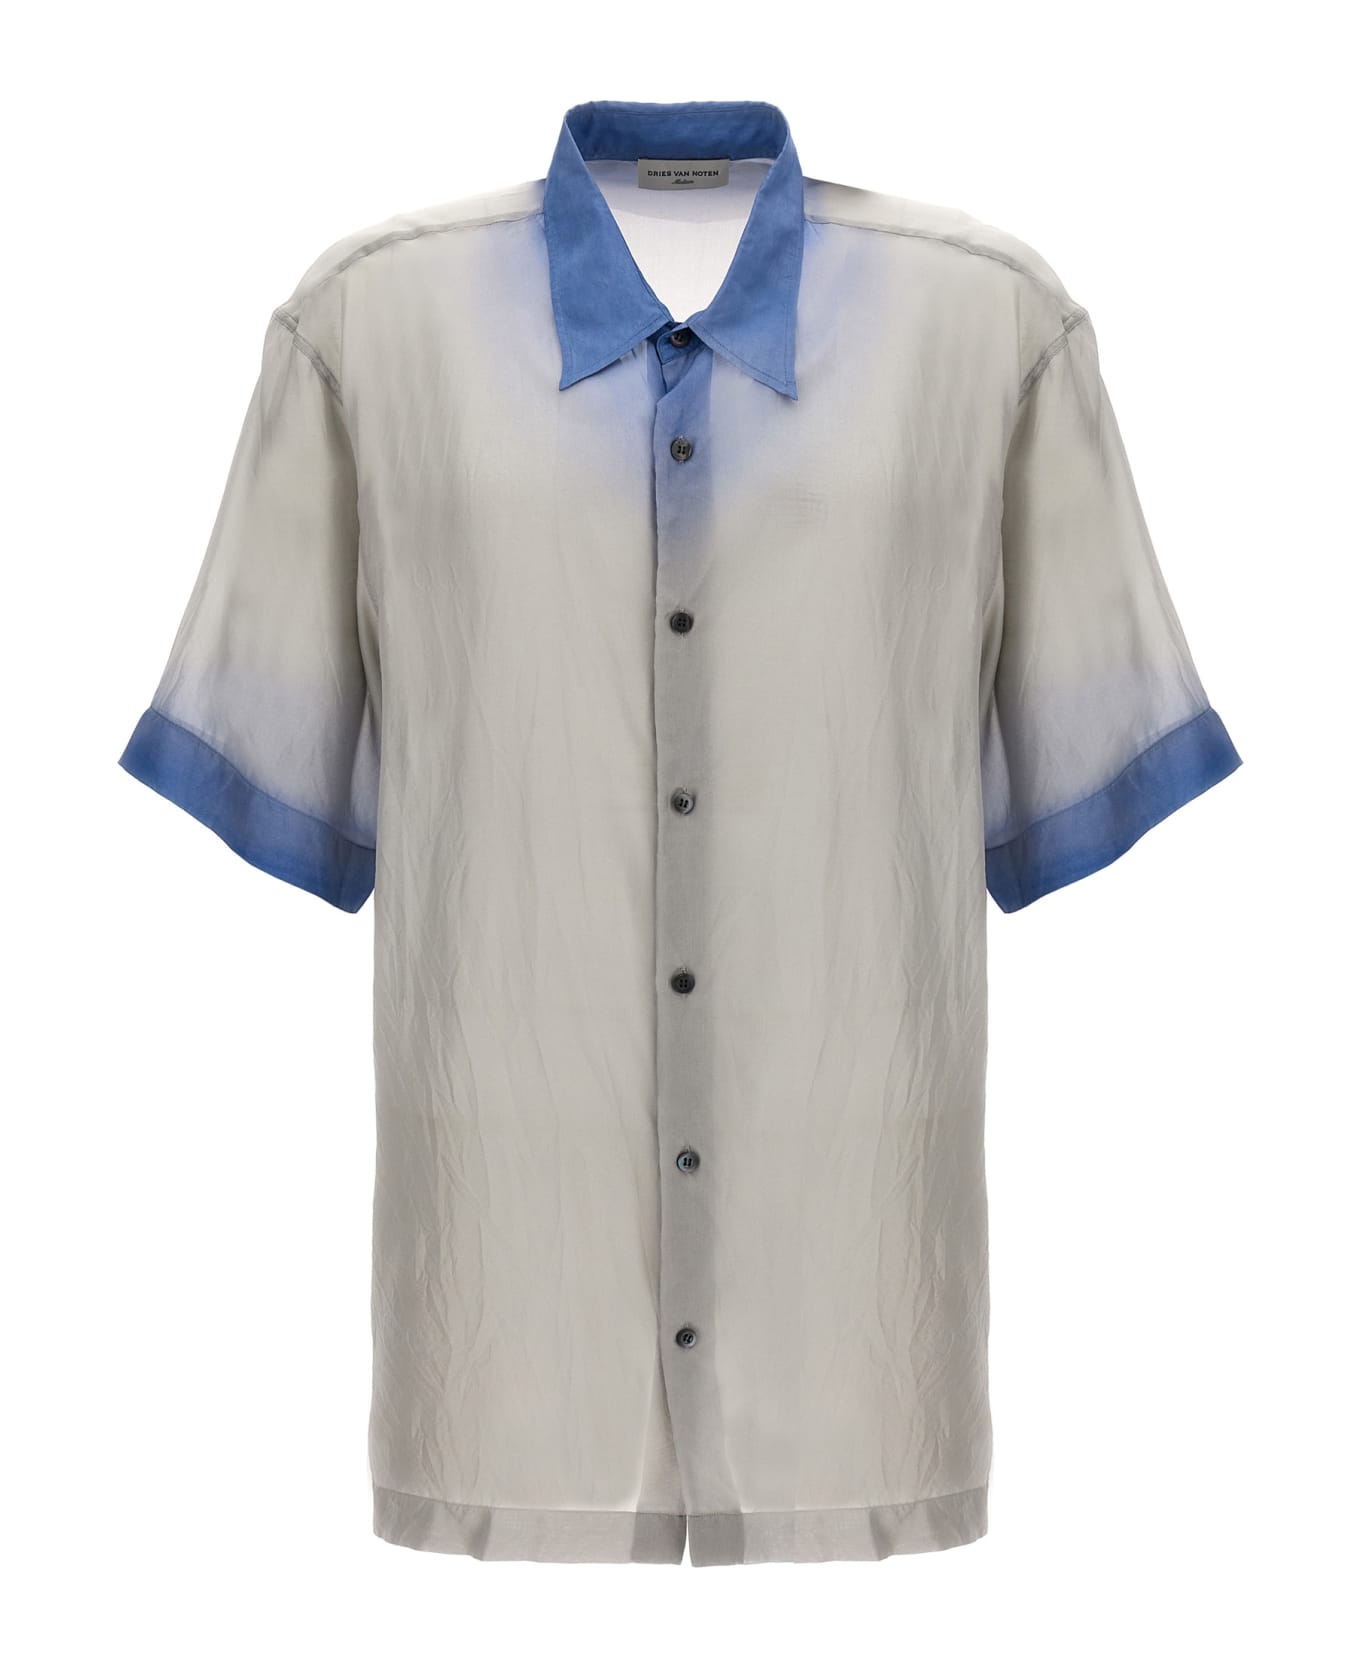 Dries Van Noten 'cassidye' Shirt - Light Blue シャツ